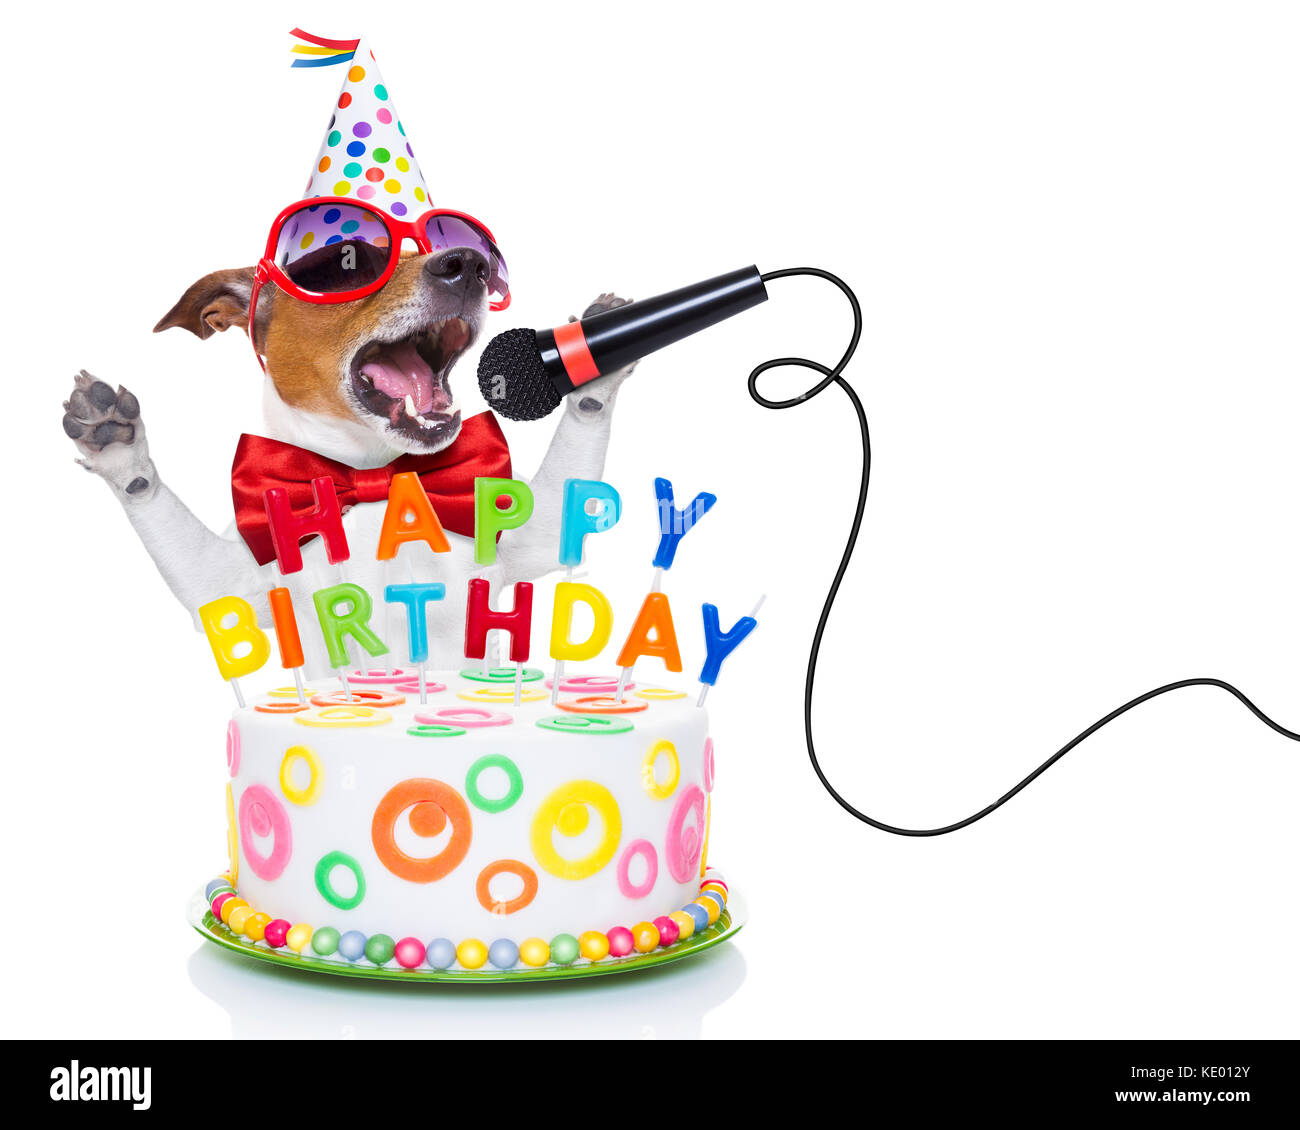 Jack Russell Hund als Überraschung, singen, Geburtstagslied wie Karaoke mit  Mikrofon, hinter lustige Kuchen, tragen rote Krawatte und Partyhut, o  isoliert Stockfotografie - Alamy